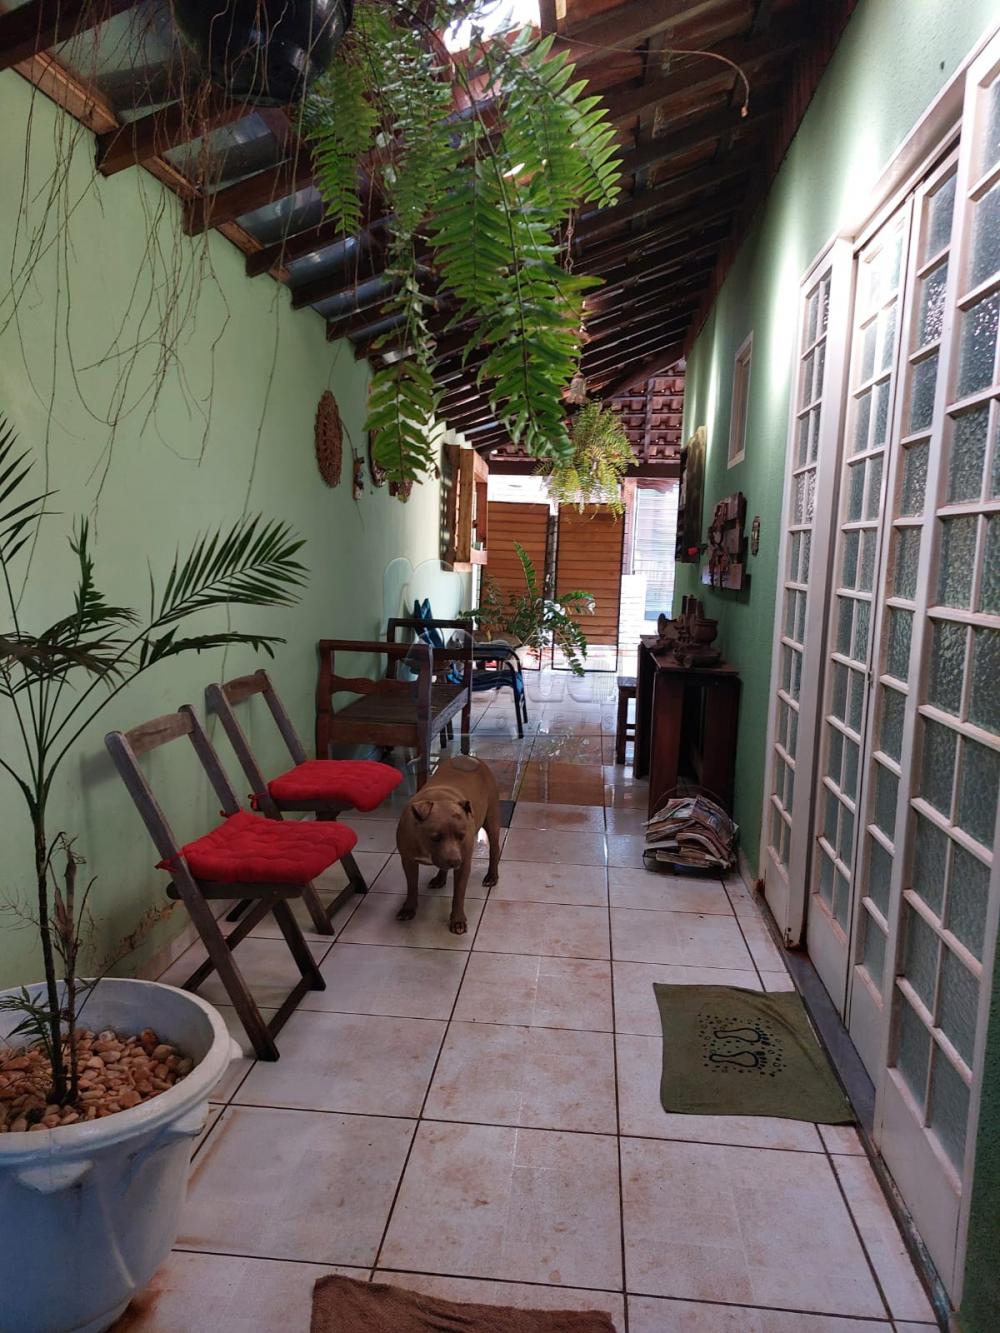 Comprar Casas / Padrão em Ribeirão Preto R$ 430.000,00 - Foto 18